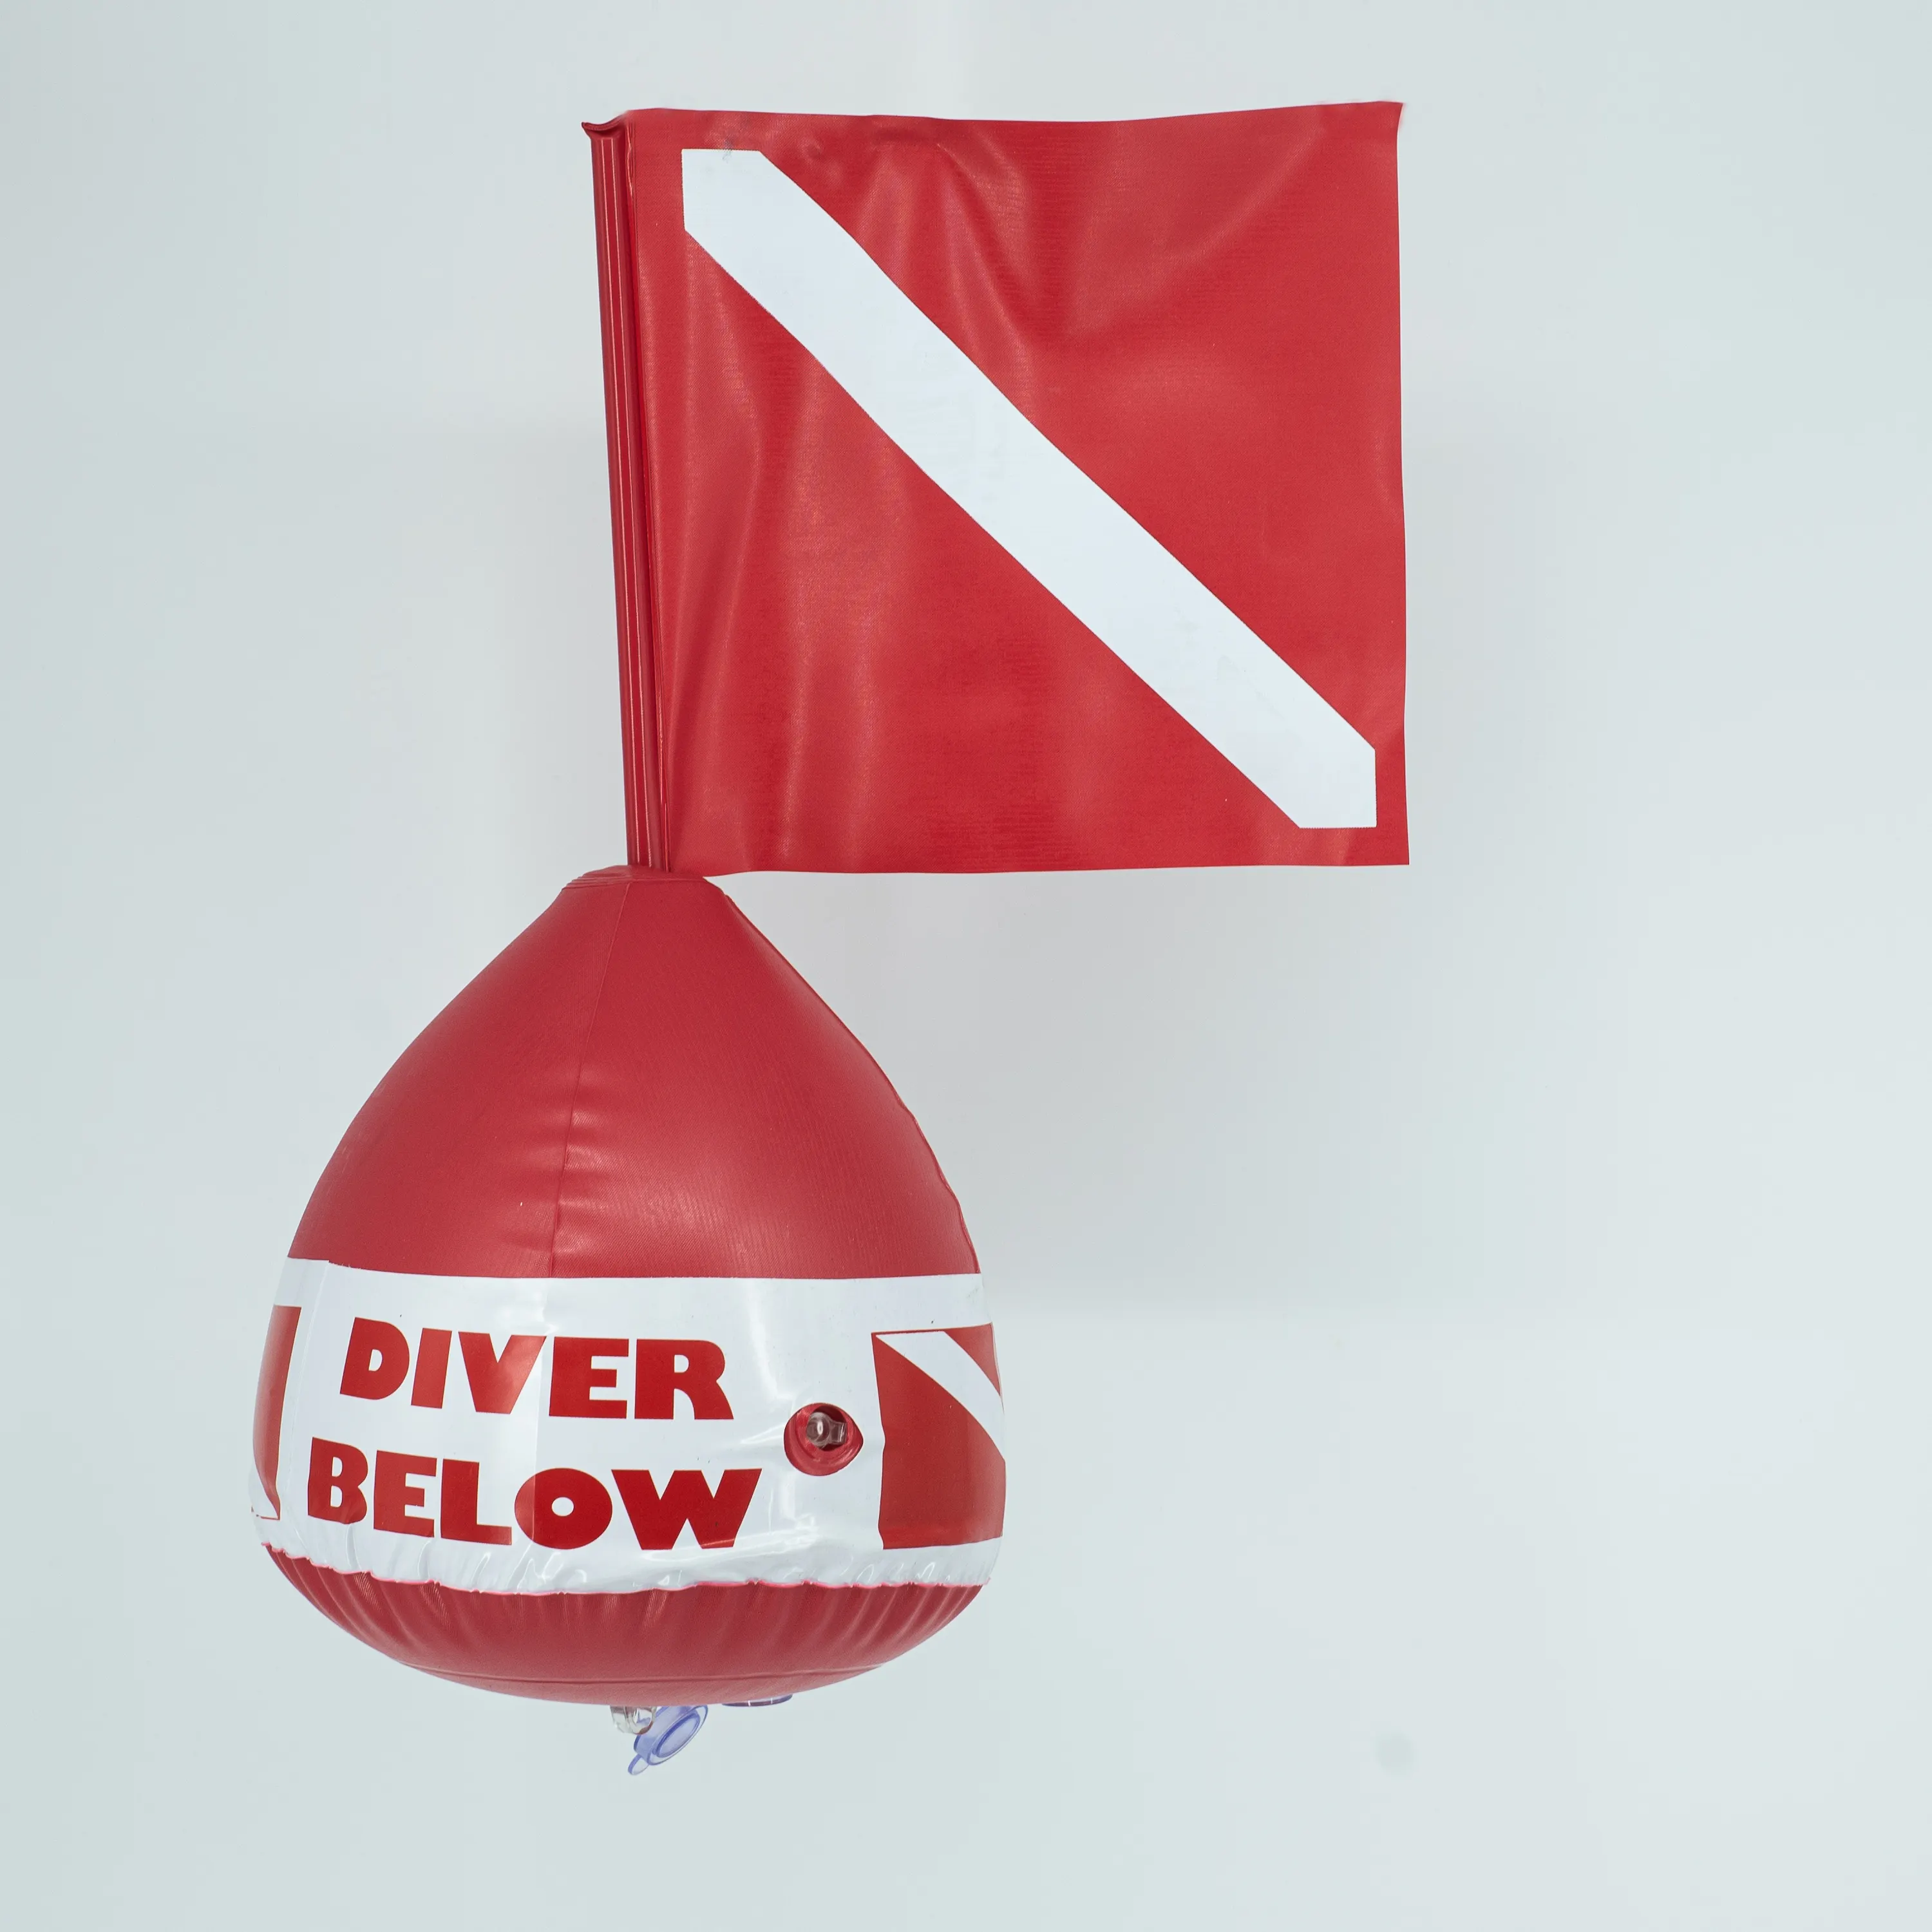 스쿠버 다이빙 "DIVE BELOW" PVC 적색 신호 스피어 낚시 용 소형 플로트 다이빙 플랫 풍선 플로트